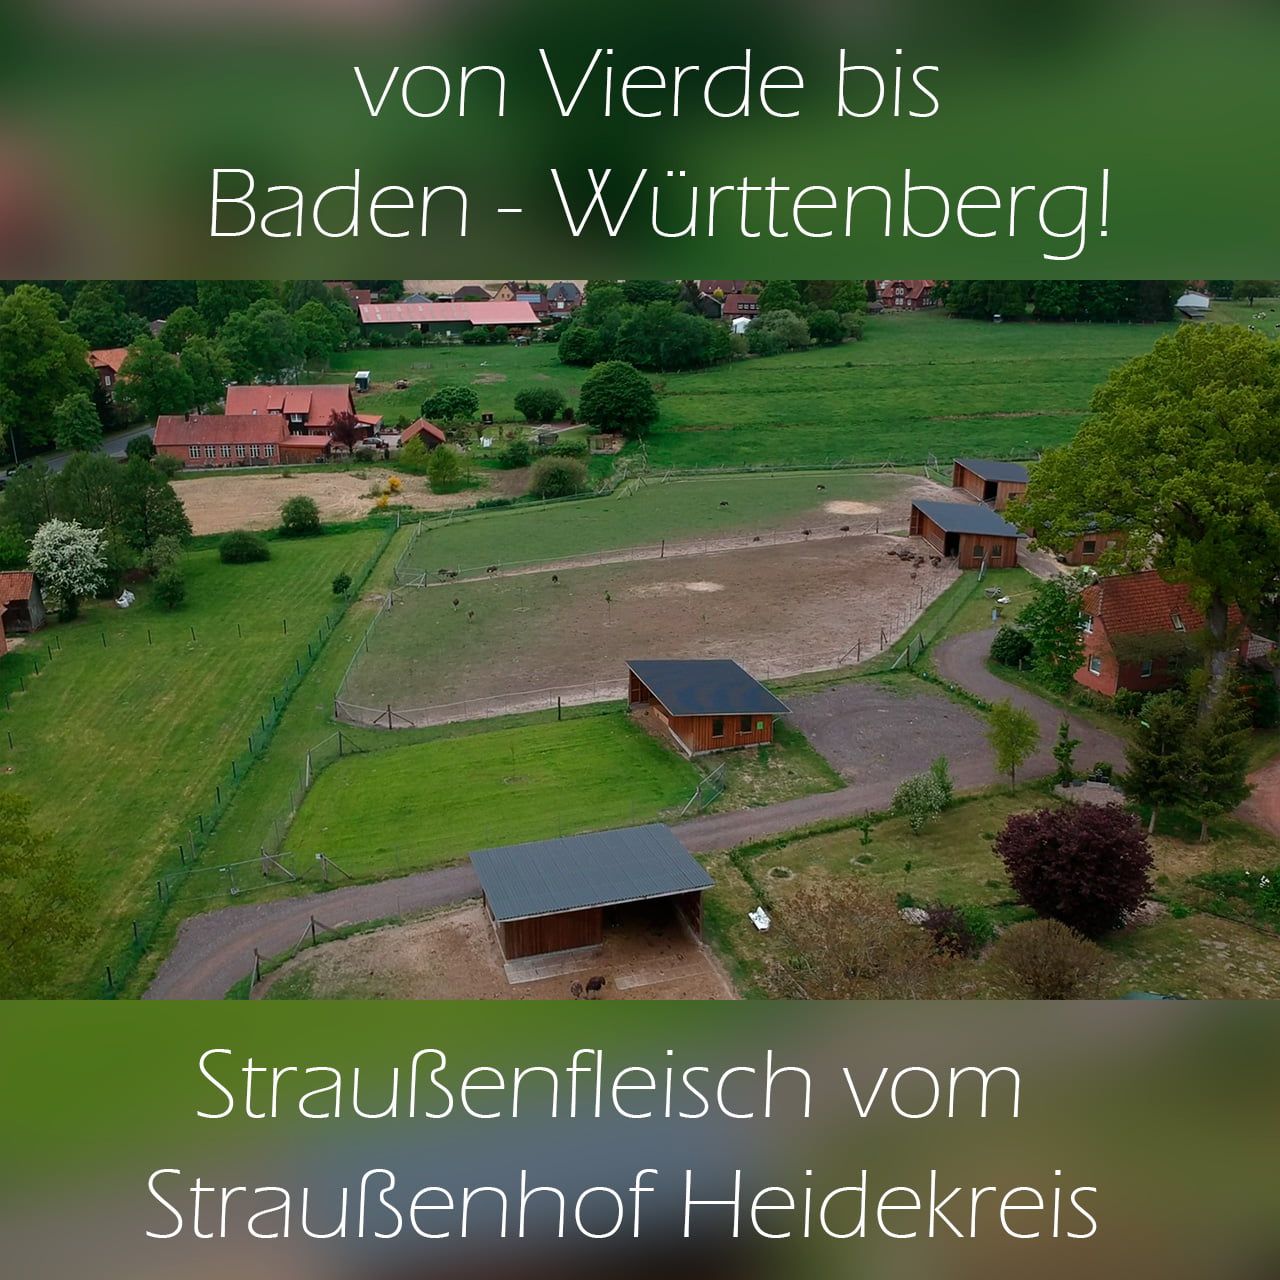 Kann man Straußenfleisch in Baden-Württemberg kaufen?